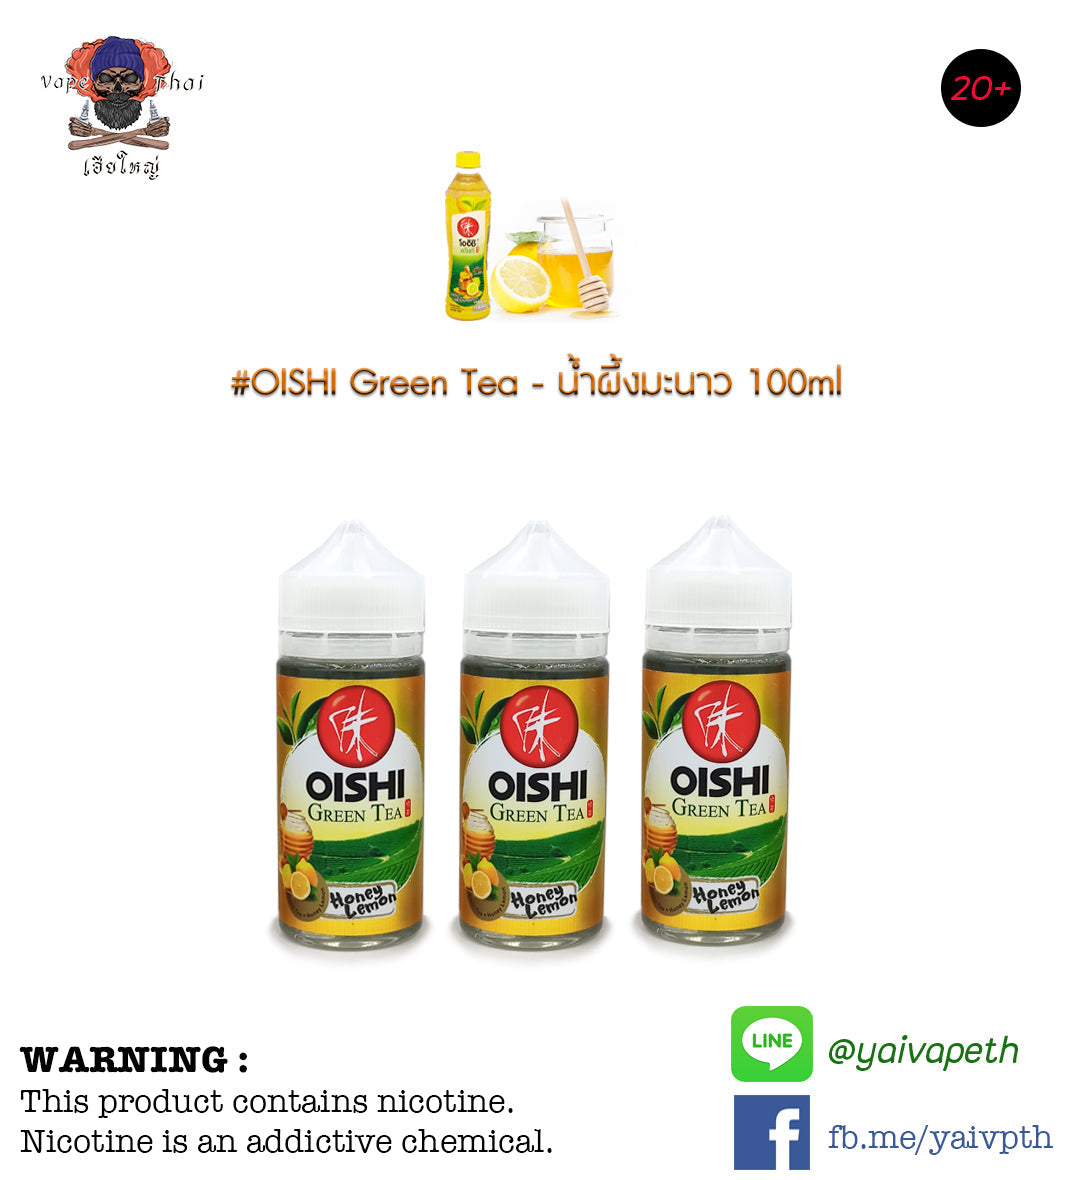 โออิชิน้ำผึ้งมะนาว - น้ำยาบุหรี่ไฟฟ้า OISHI Green Tea Honey Lemon 100ml (มาเลเซีย) [เย็น] ของแท้ - YAIVAPETHAI  No.1